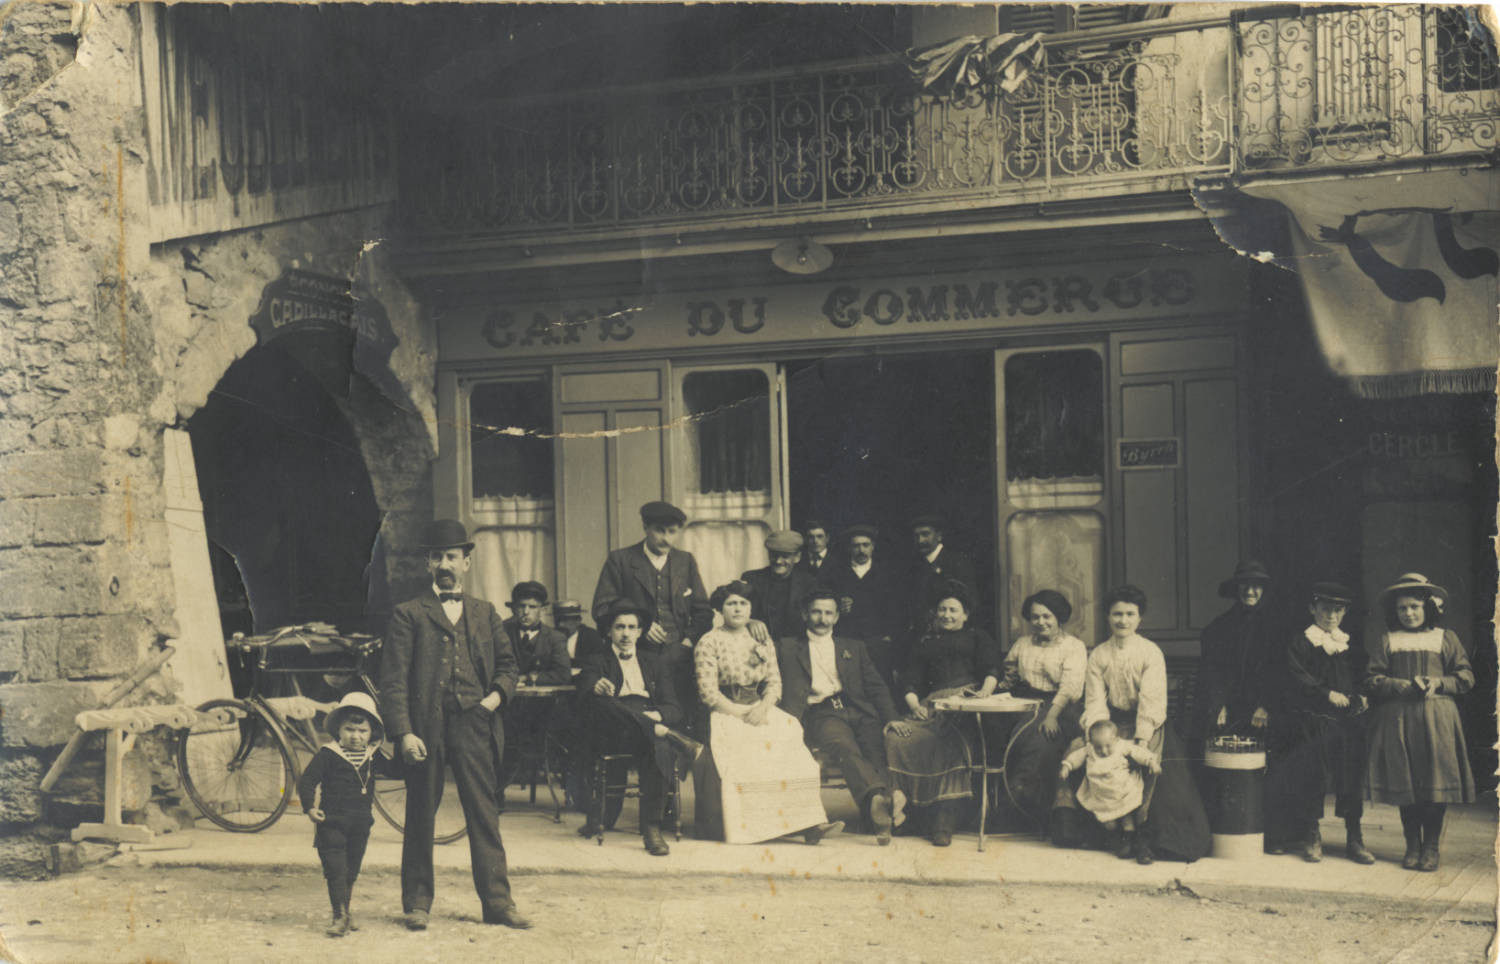 Une dizaine de personnes posant devant le café du commerce à Laparade vers 1920.